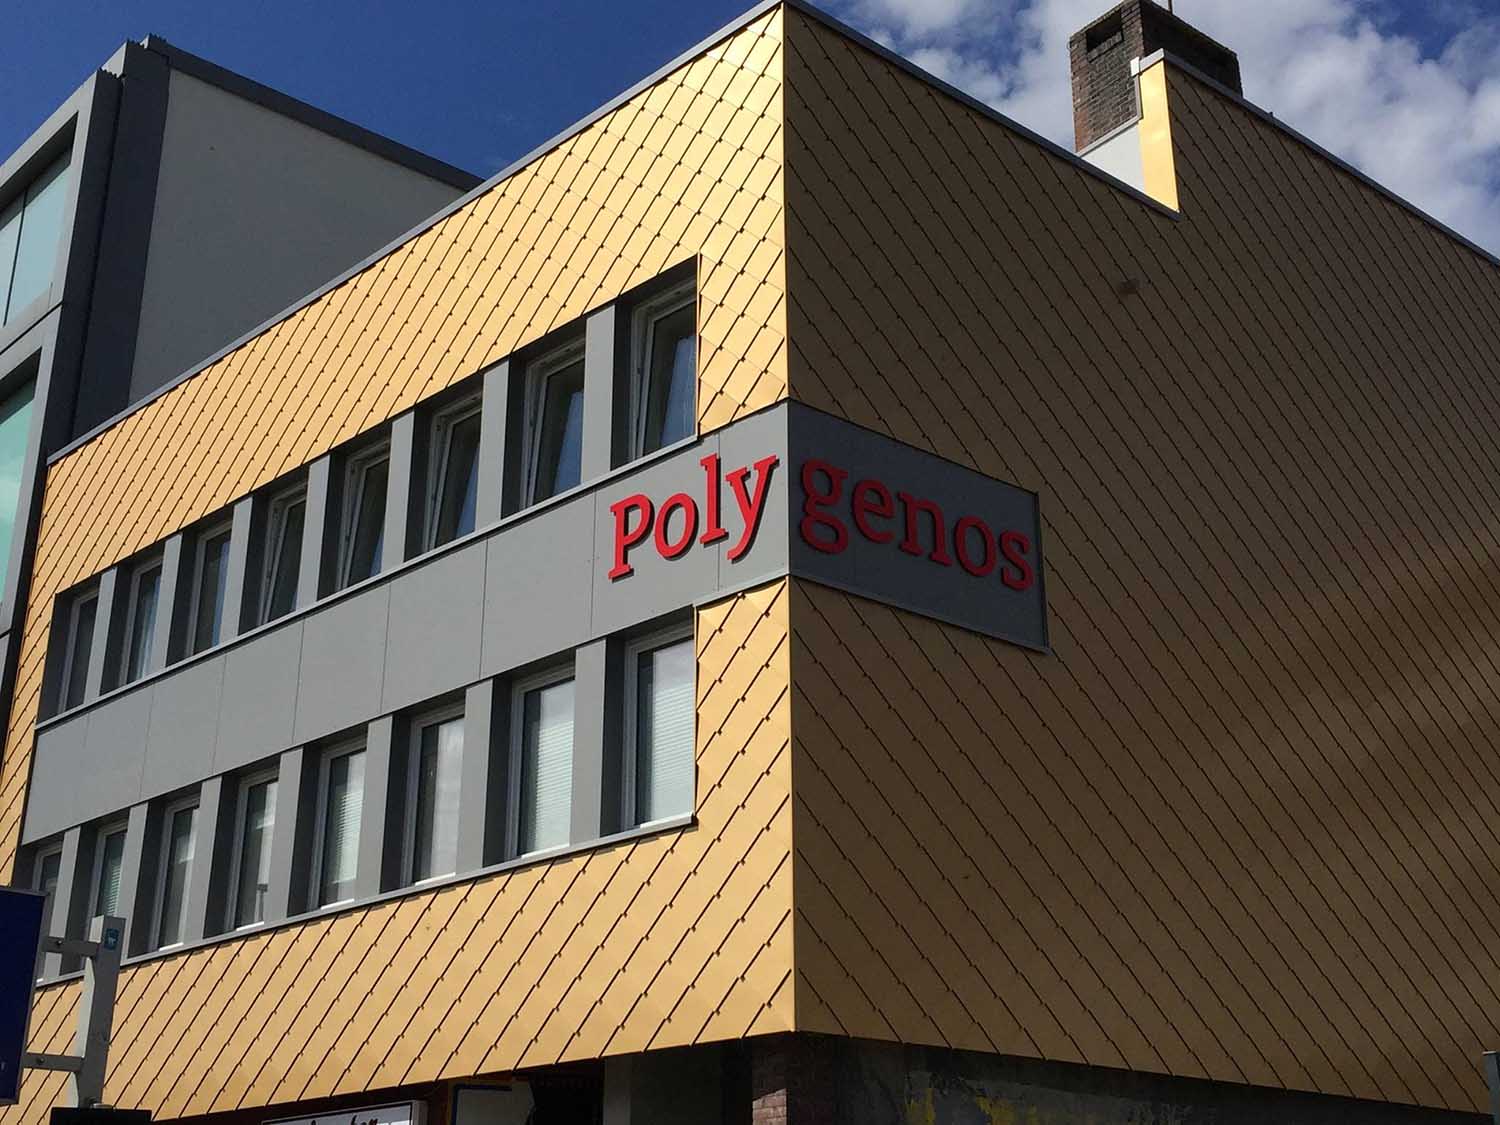 Polyhaus